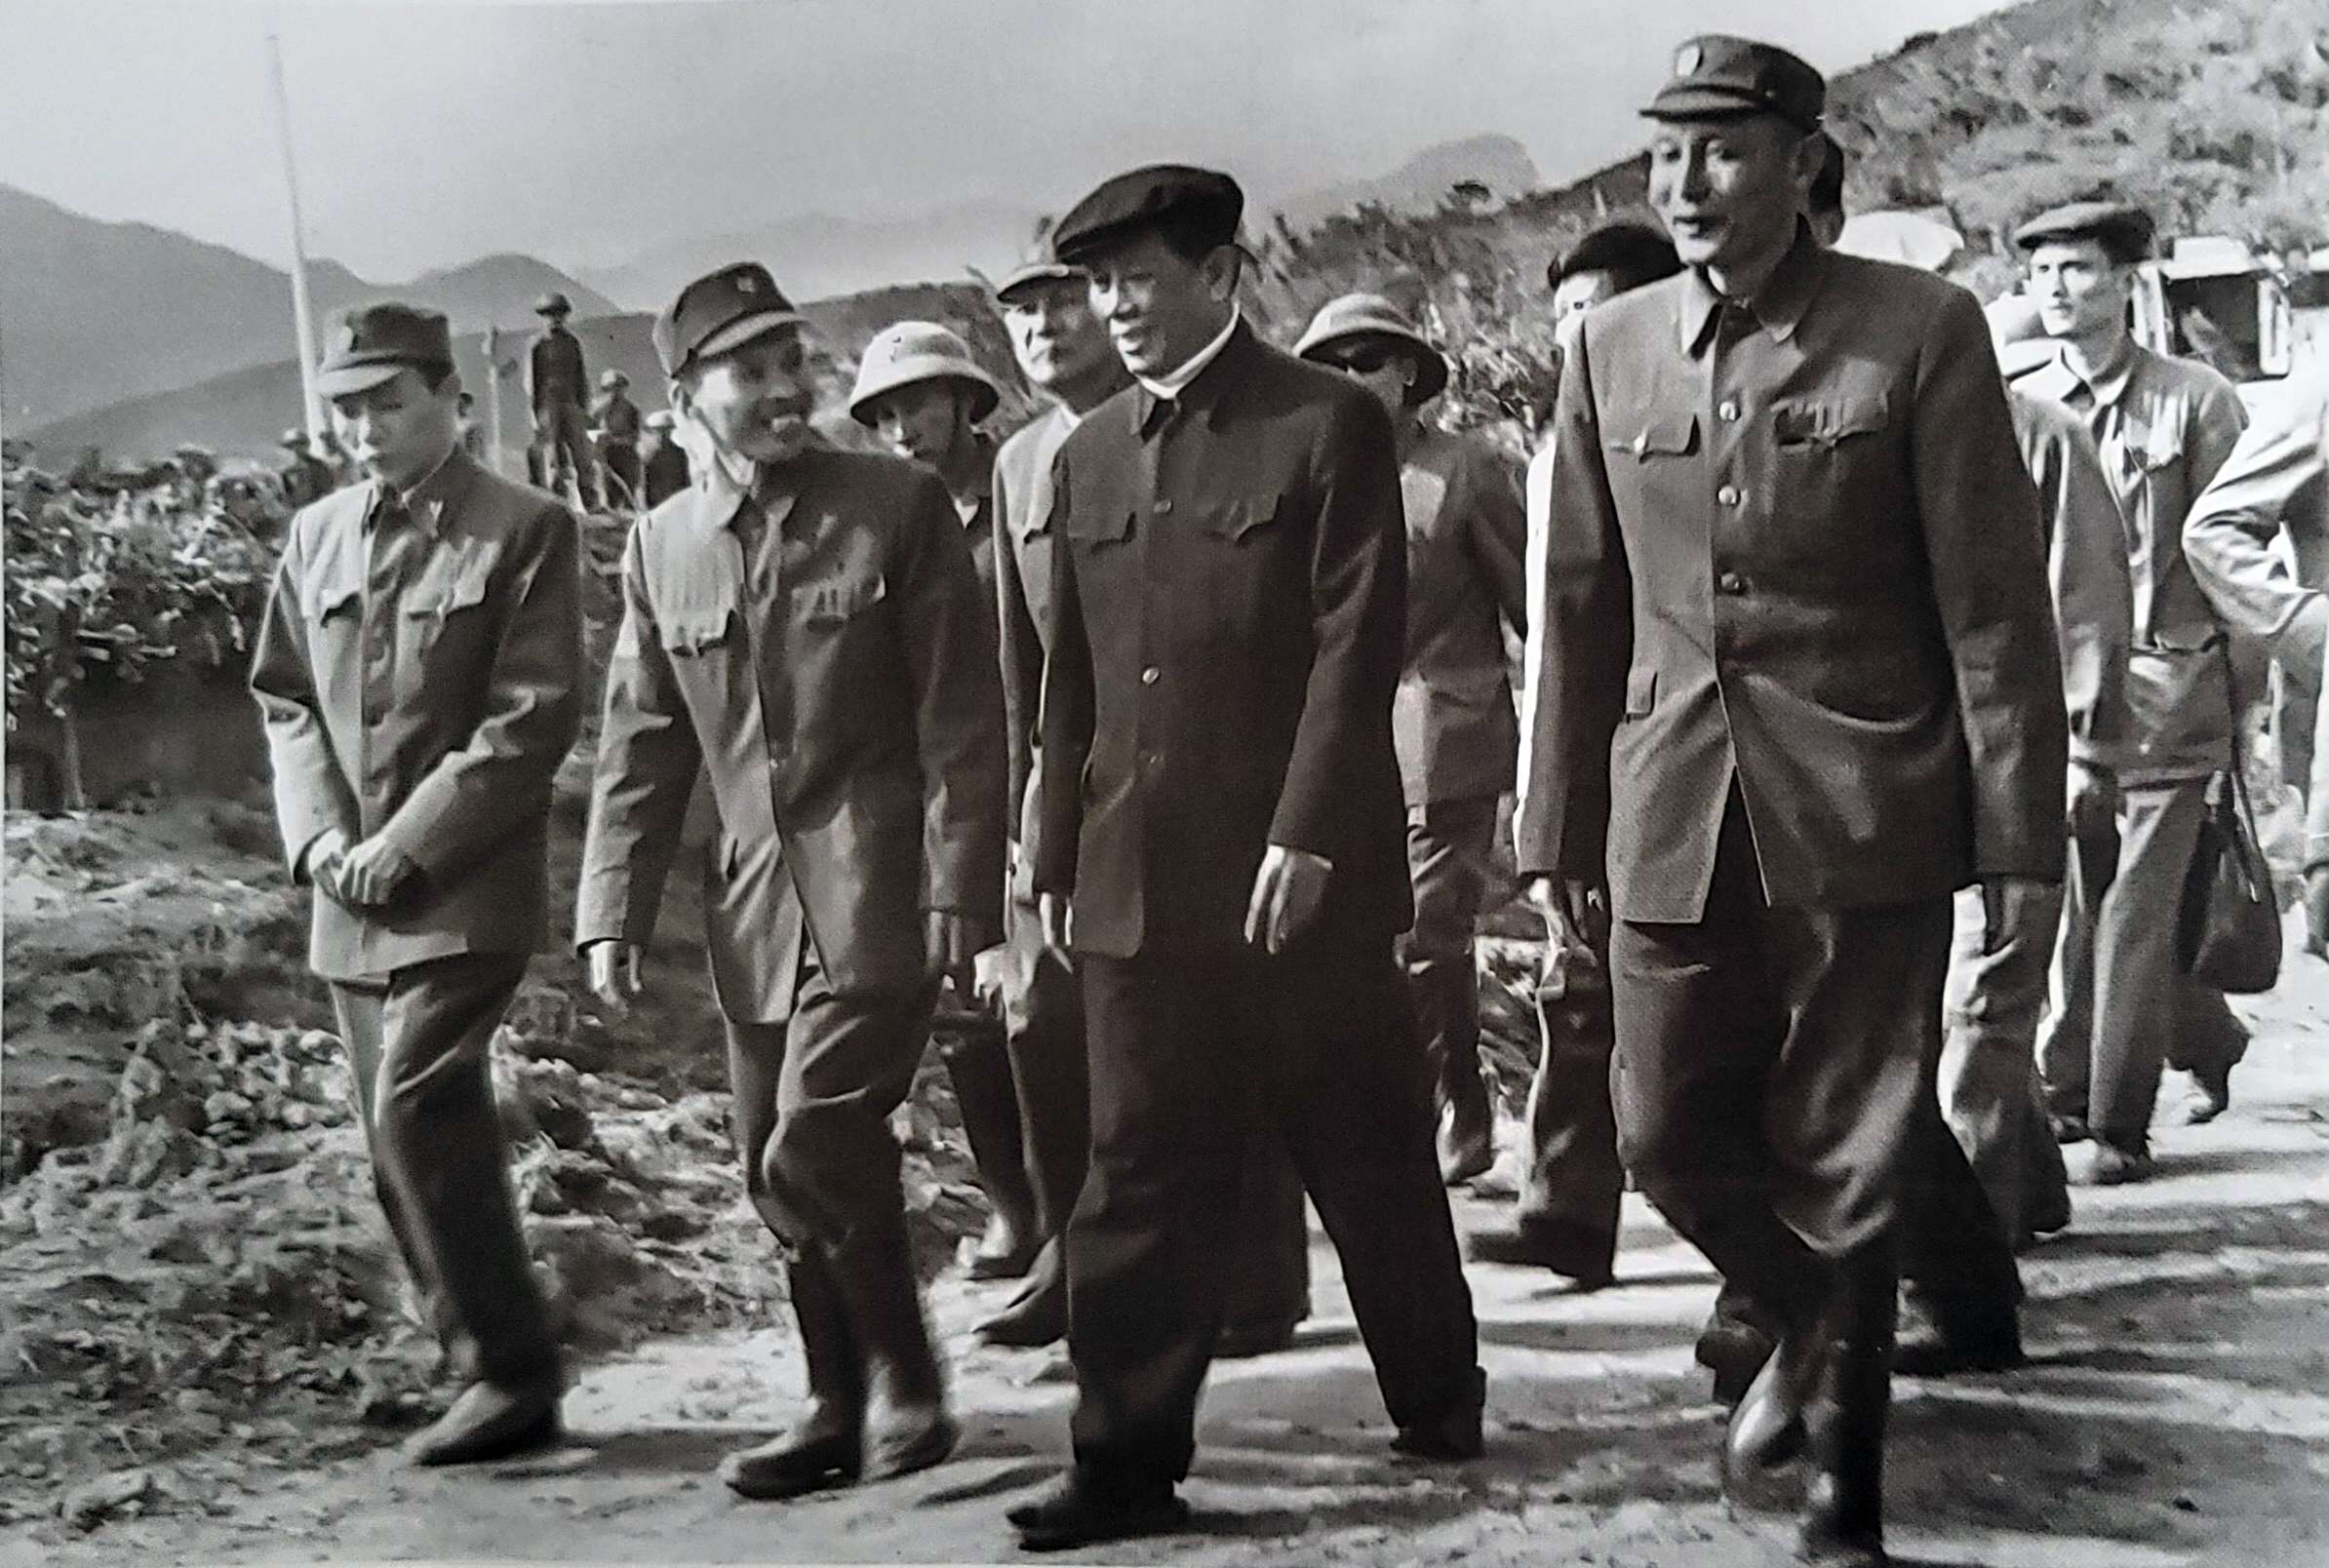  Đồng chí Tổng Bí thư Lê Duẩn thăm đường Hồ Chí Minh tháng 3/1973.